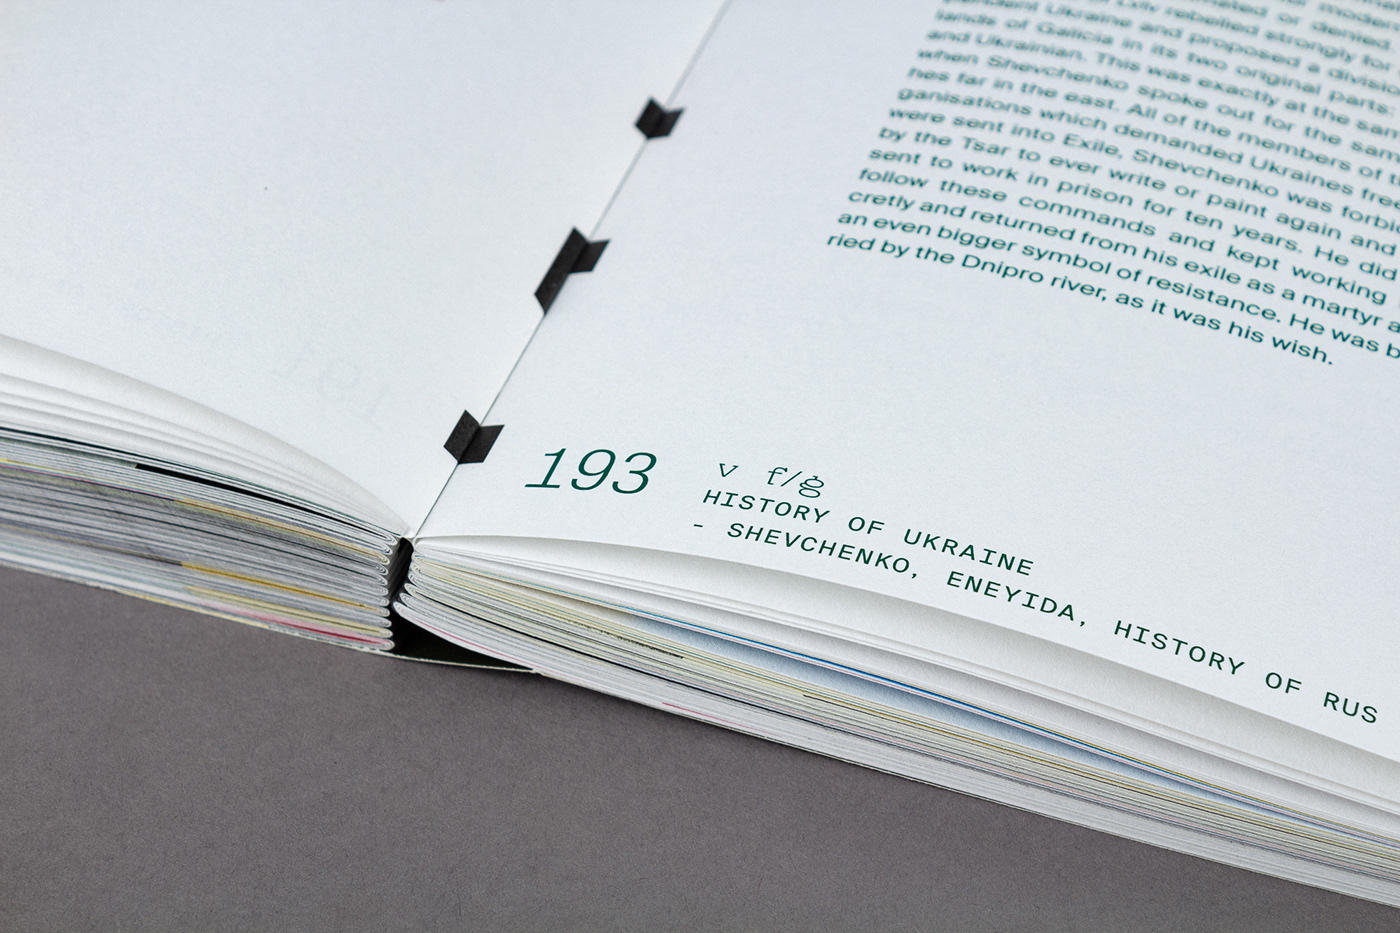 book book design editorial Kyiv Munken schweizer broschur swiss brochure type design typography   ukraine